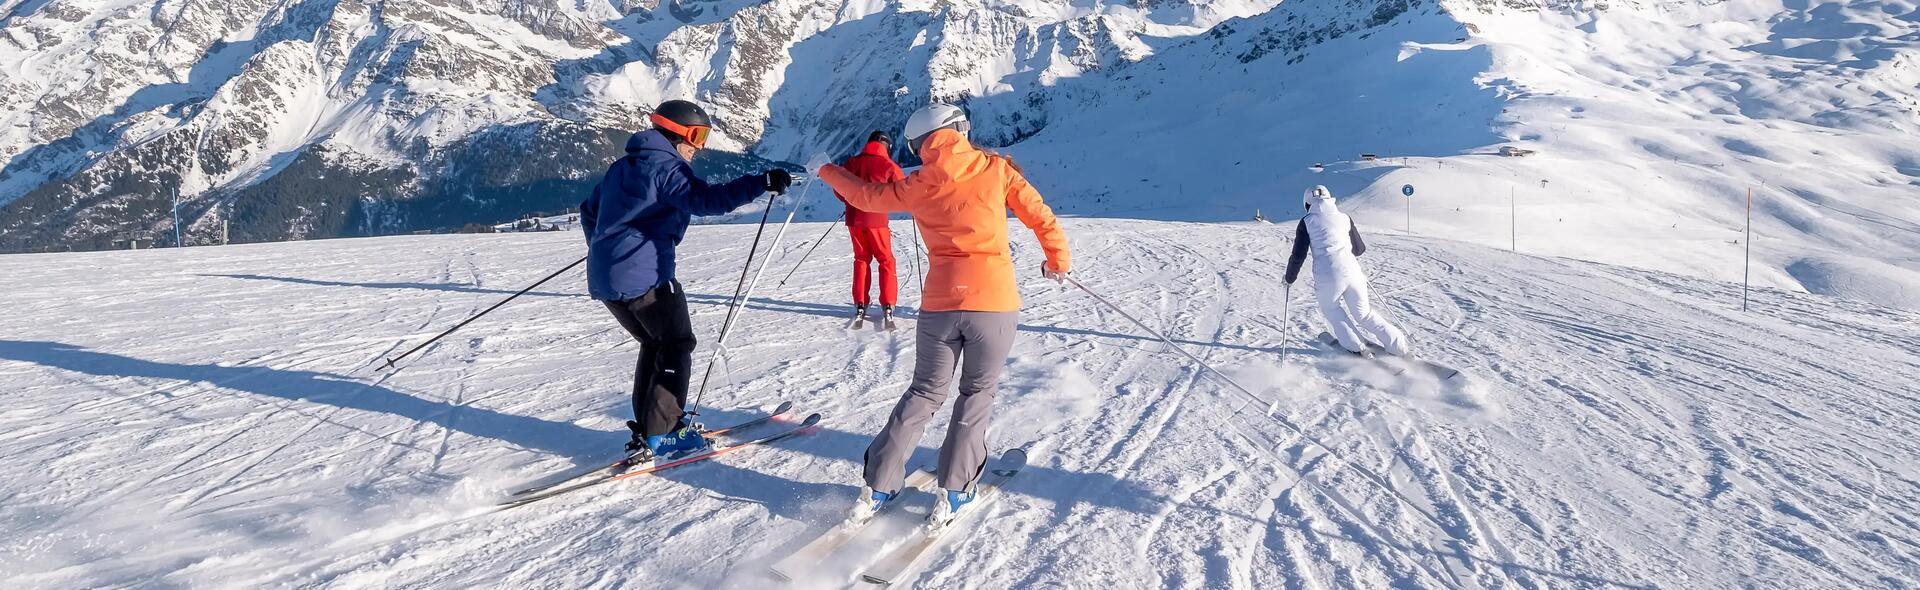 S'équiper pour le ski alpin